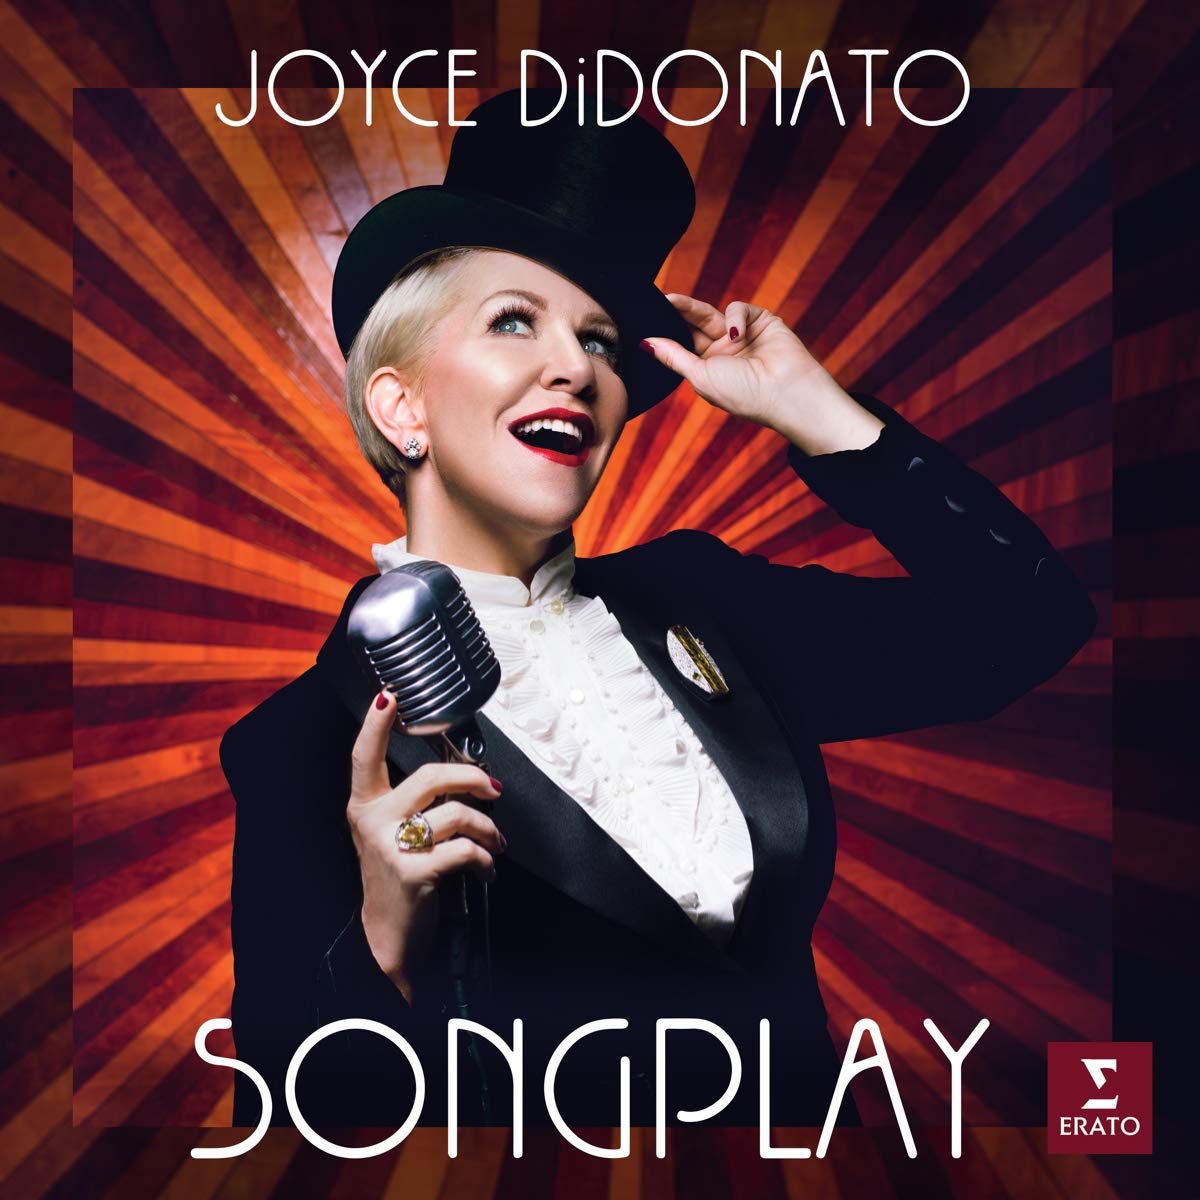 Songplay | Joyce Didonato carturesti.ro poza noua